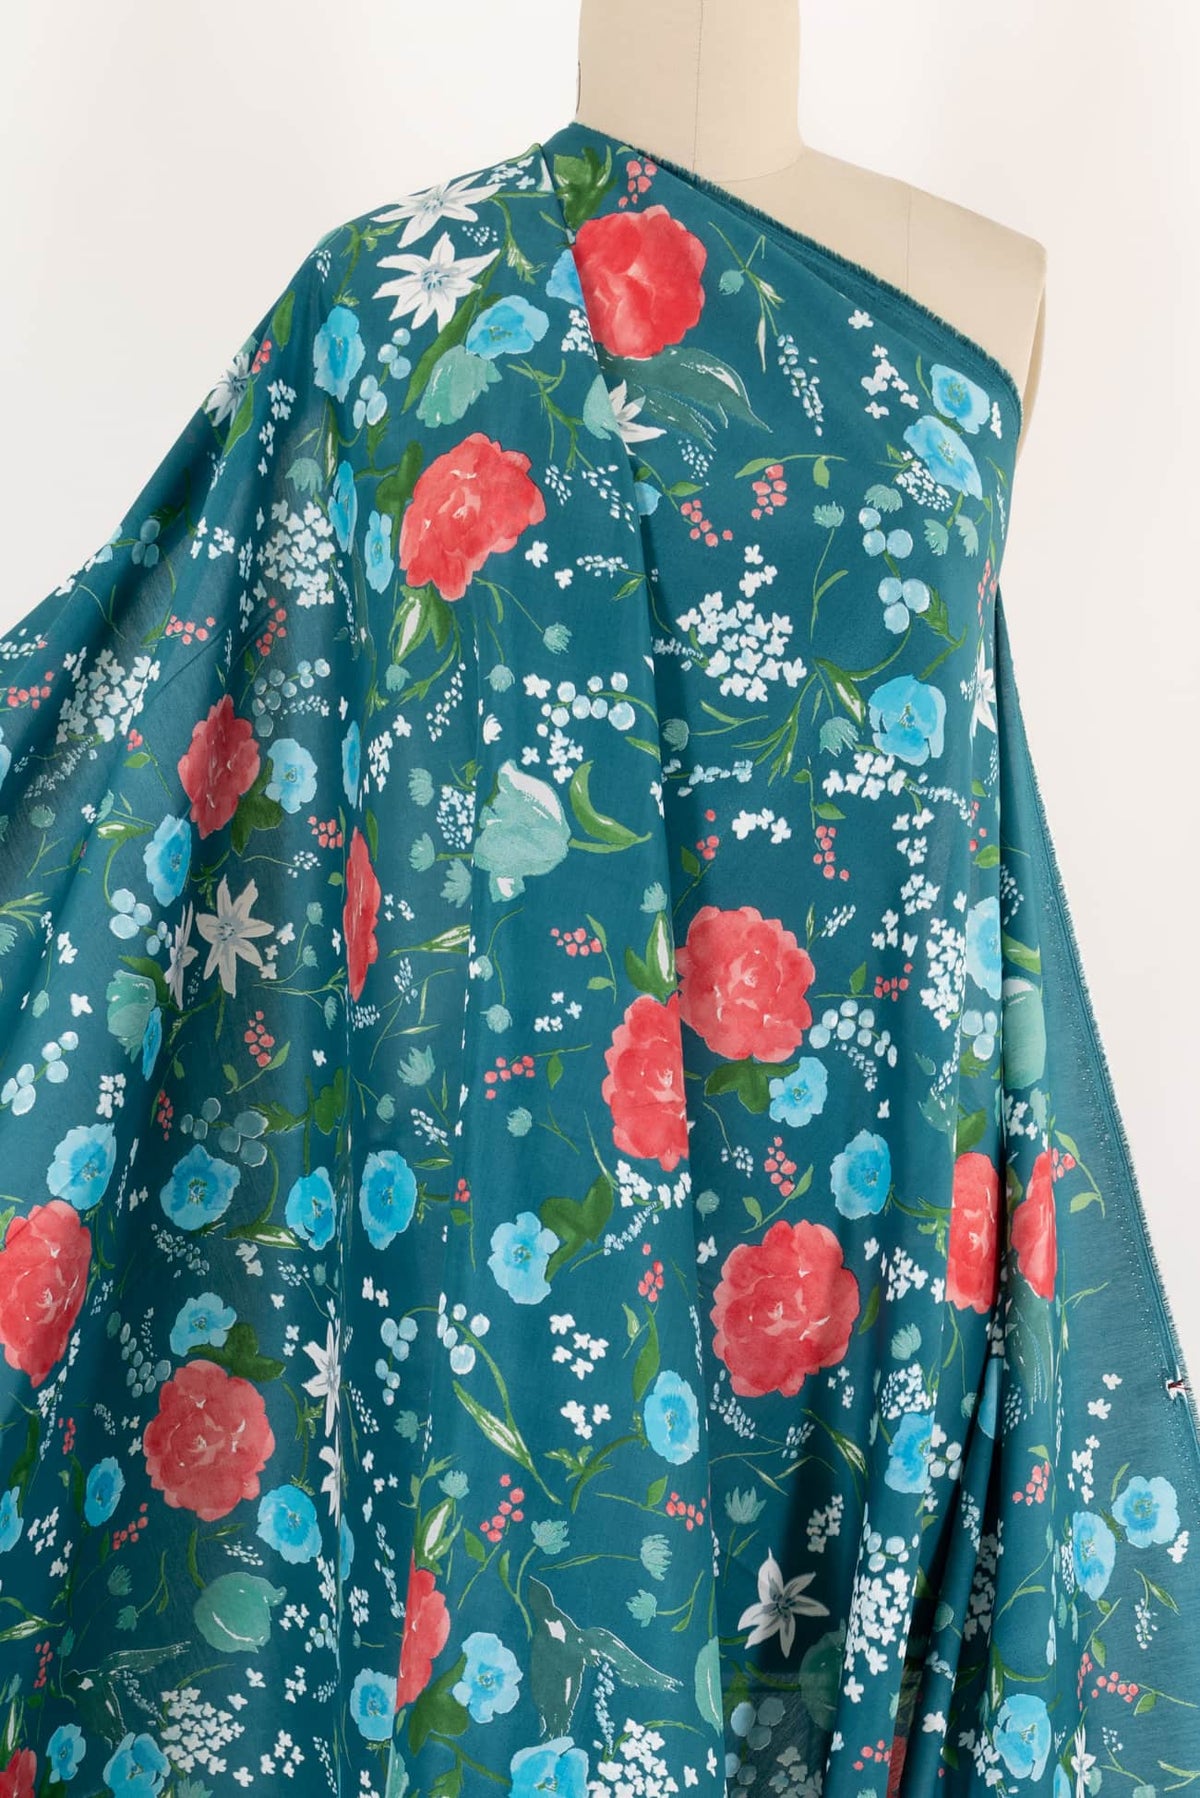 Midori Japanese Cotton/Silk Woven - Marcy Tilton Fabrics